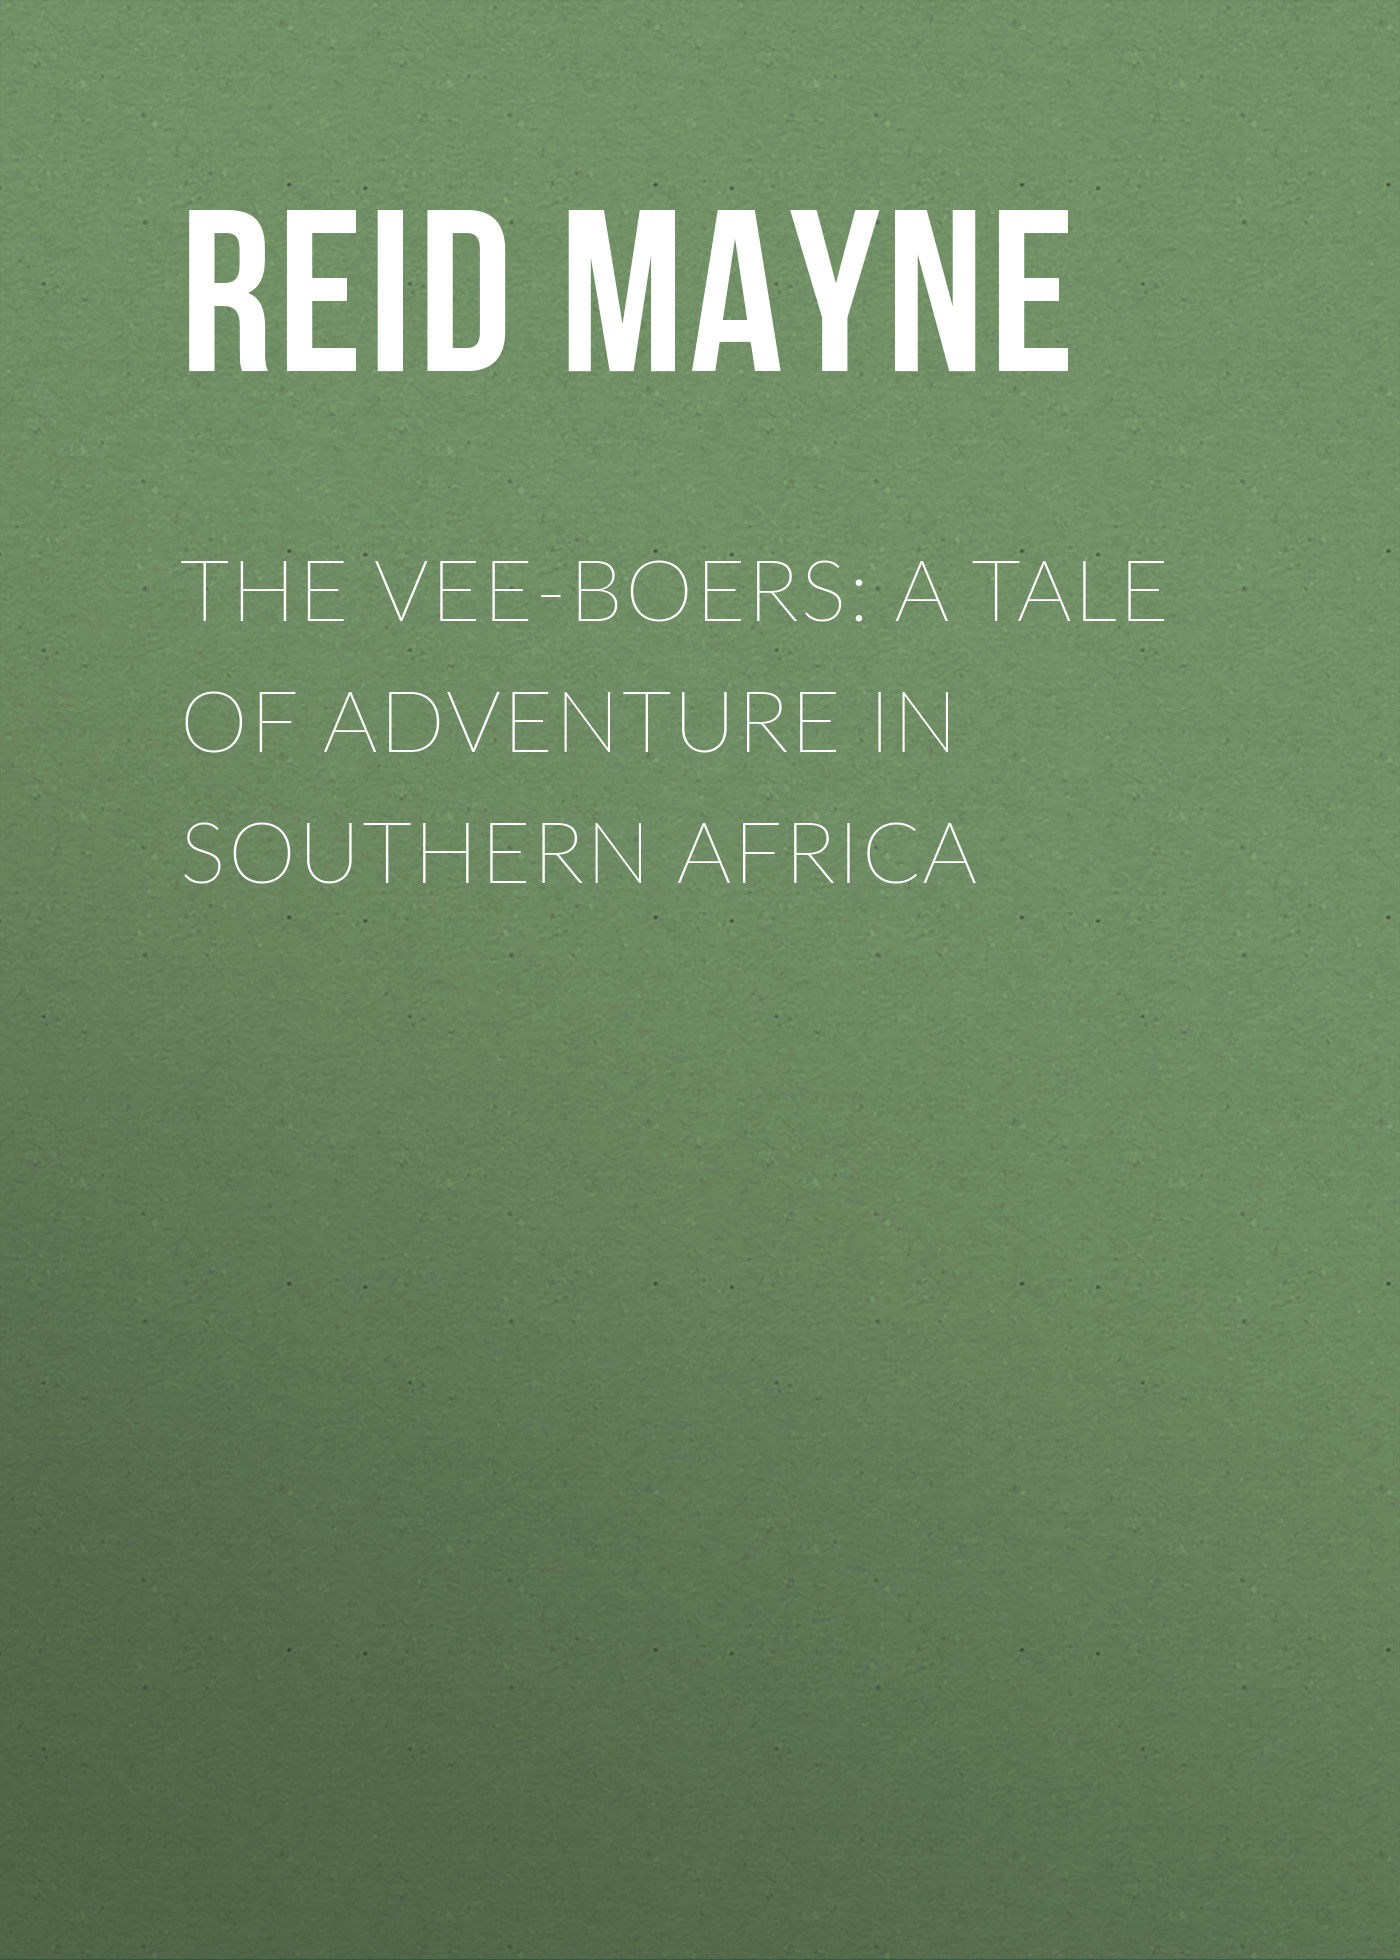 Книга The Vee-Boers: A Tale of Adventure in Southern Africa из серии , созданная Mayne Reid, может относится к жанру Зарубежная классика, Зарубежные детские книги. Стоимость электронной книги The Vee-Boers: A Tale of Adventure in Southern Africa с идентификатором 23153163 составляет 0 руб.